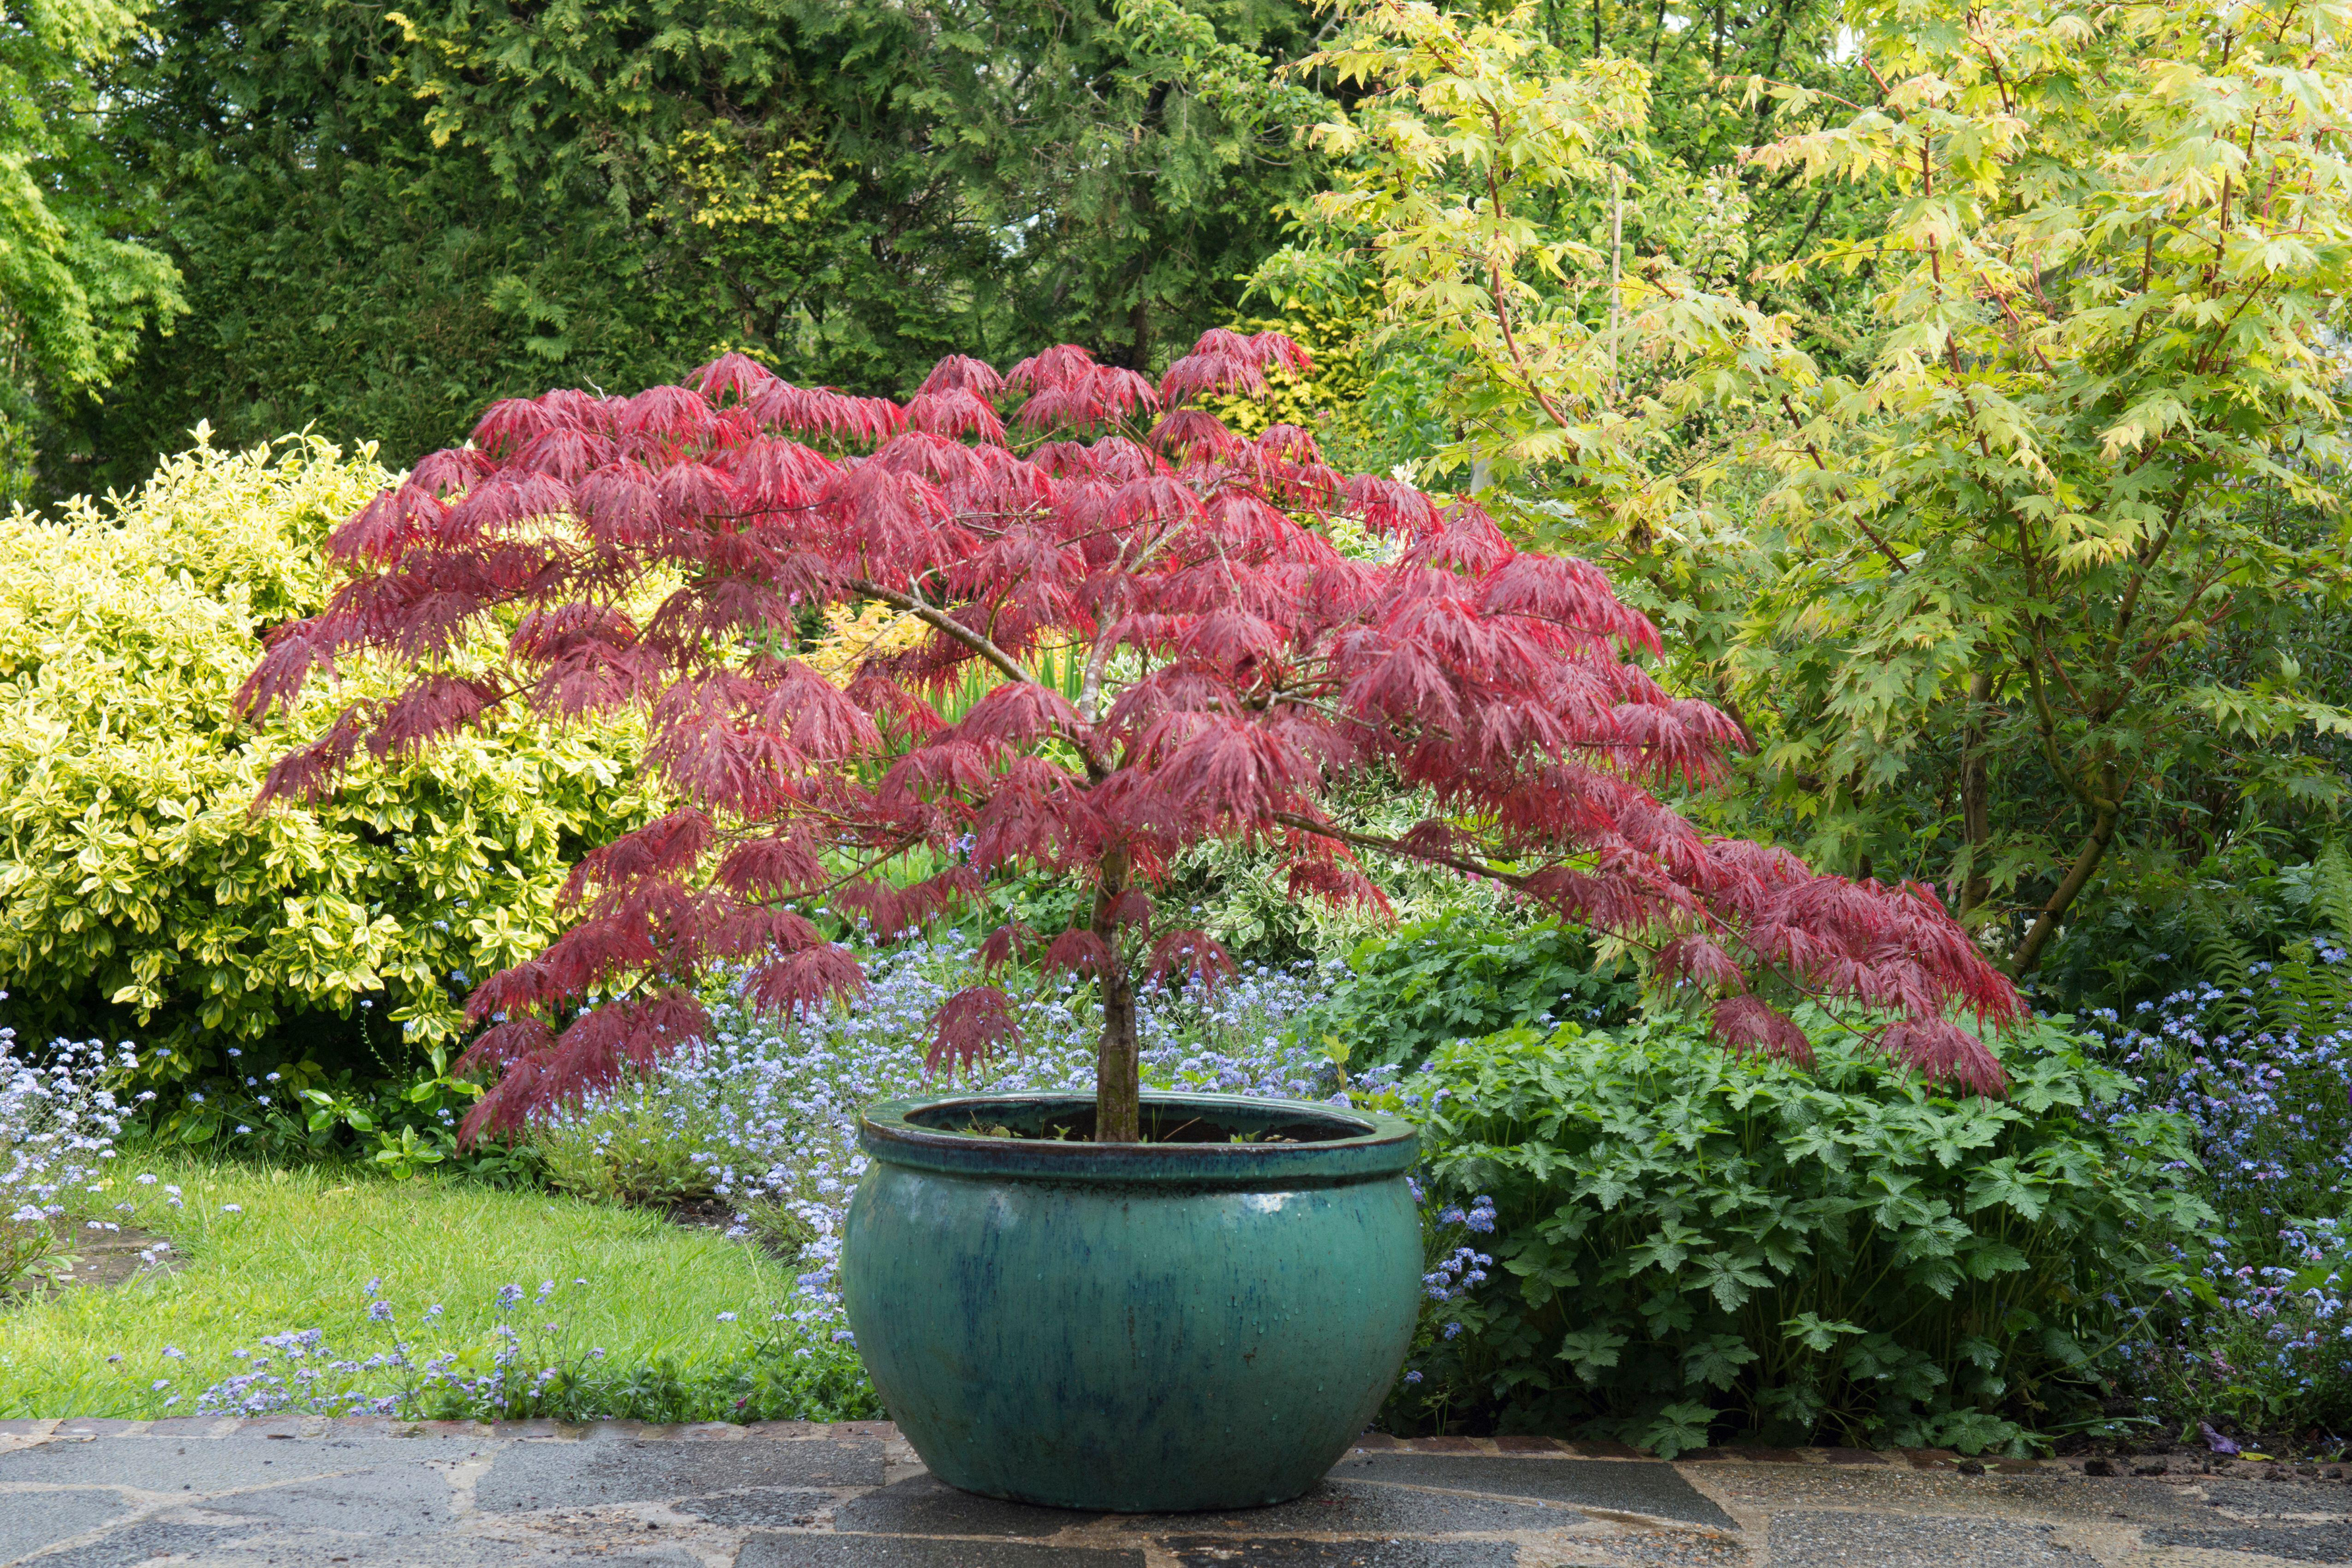 Acer palmatum 'Garnet' in a pot (Alamy/PA)